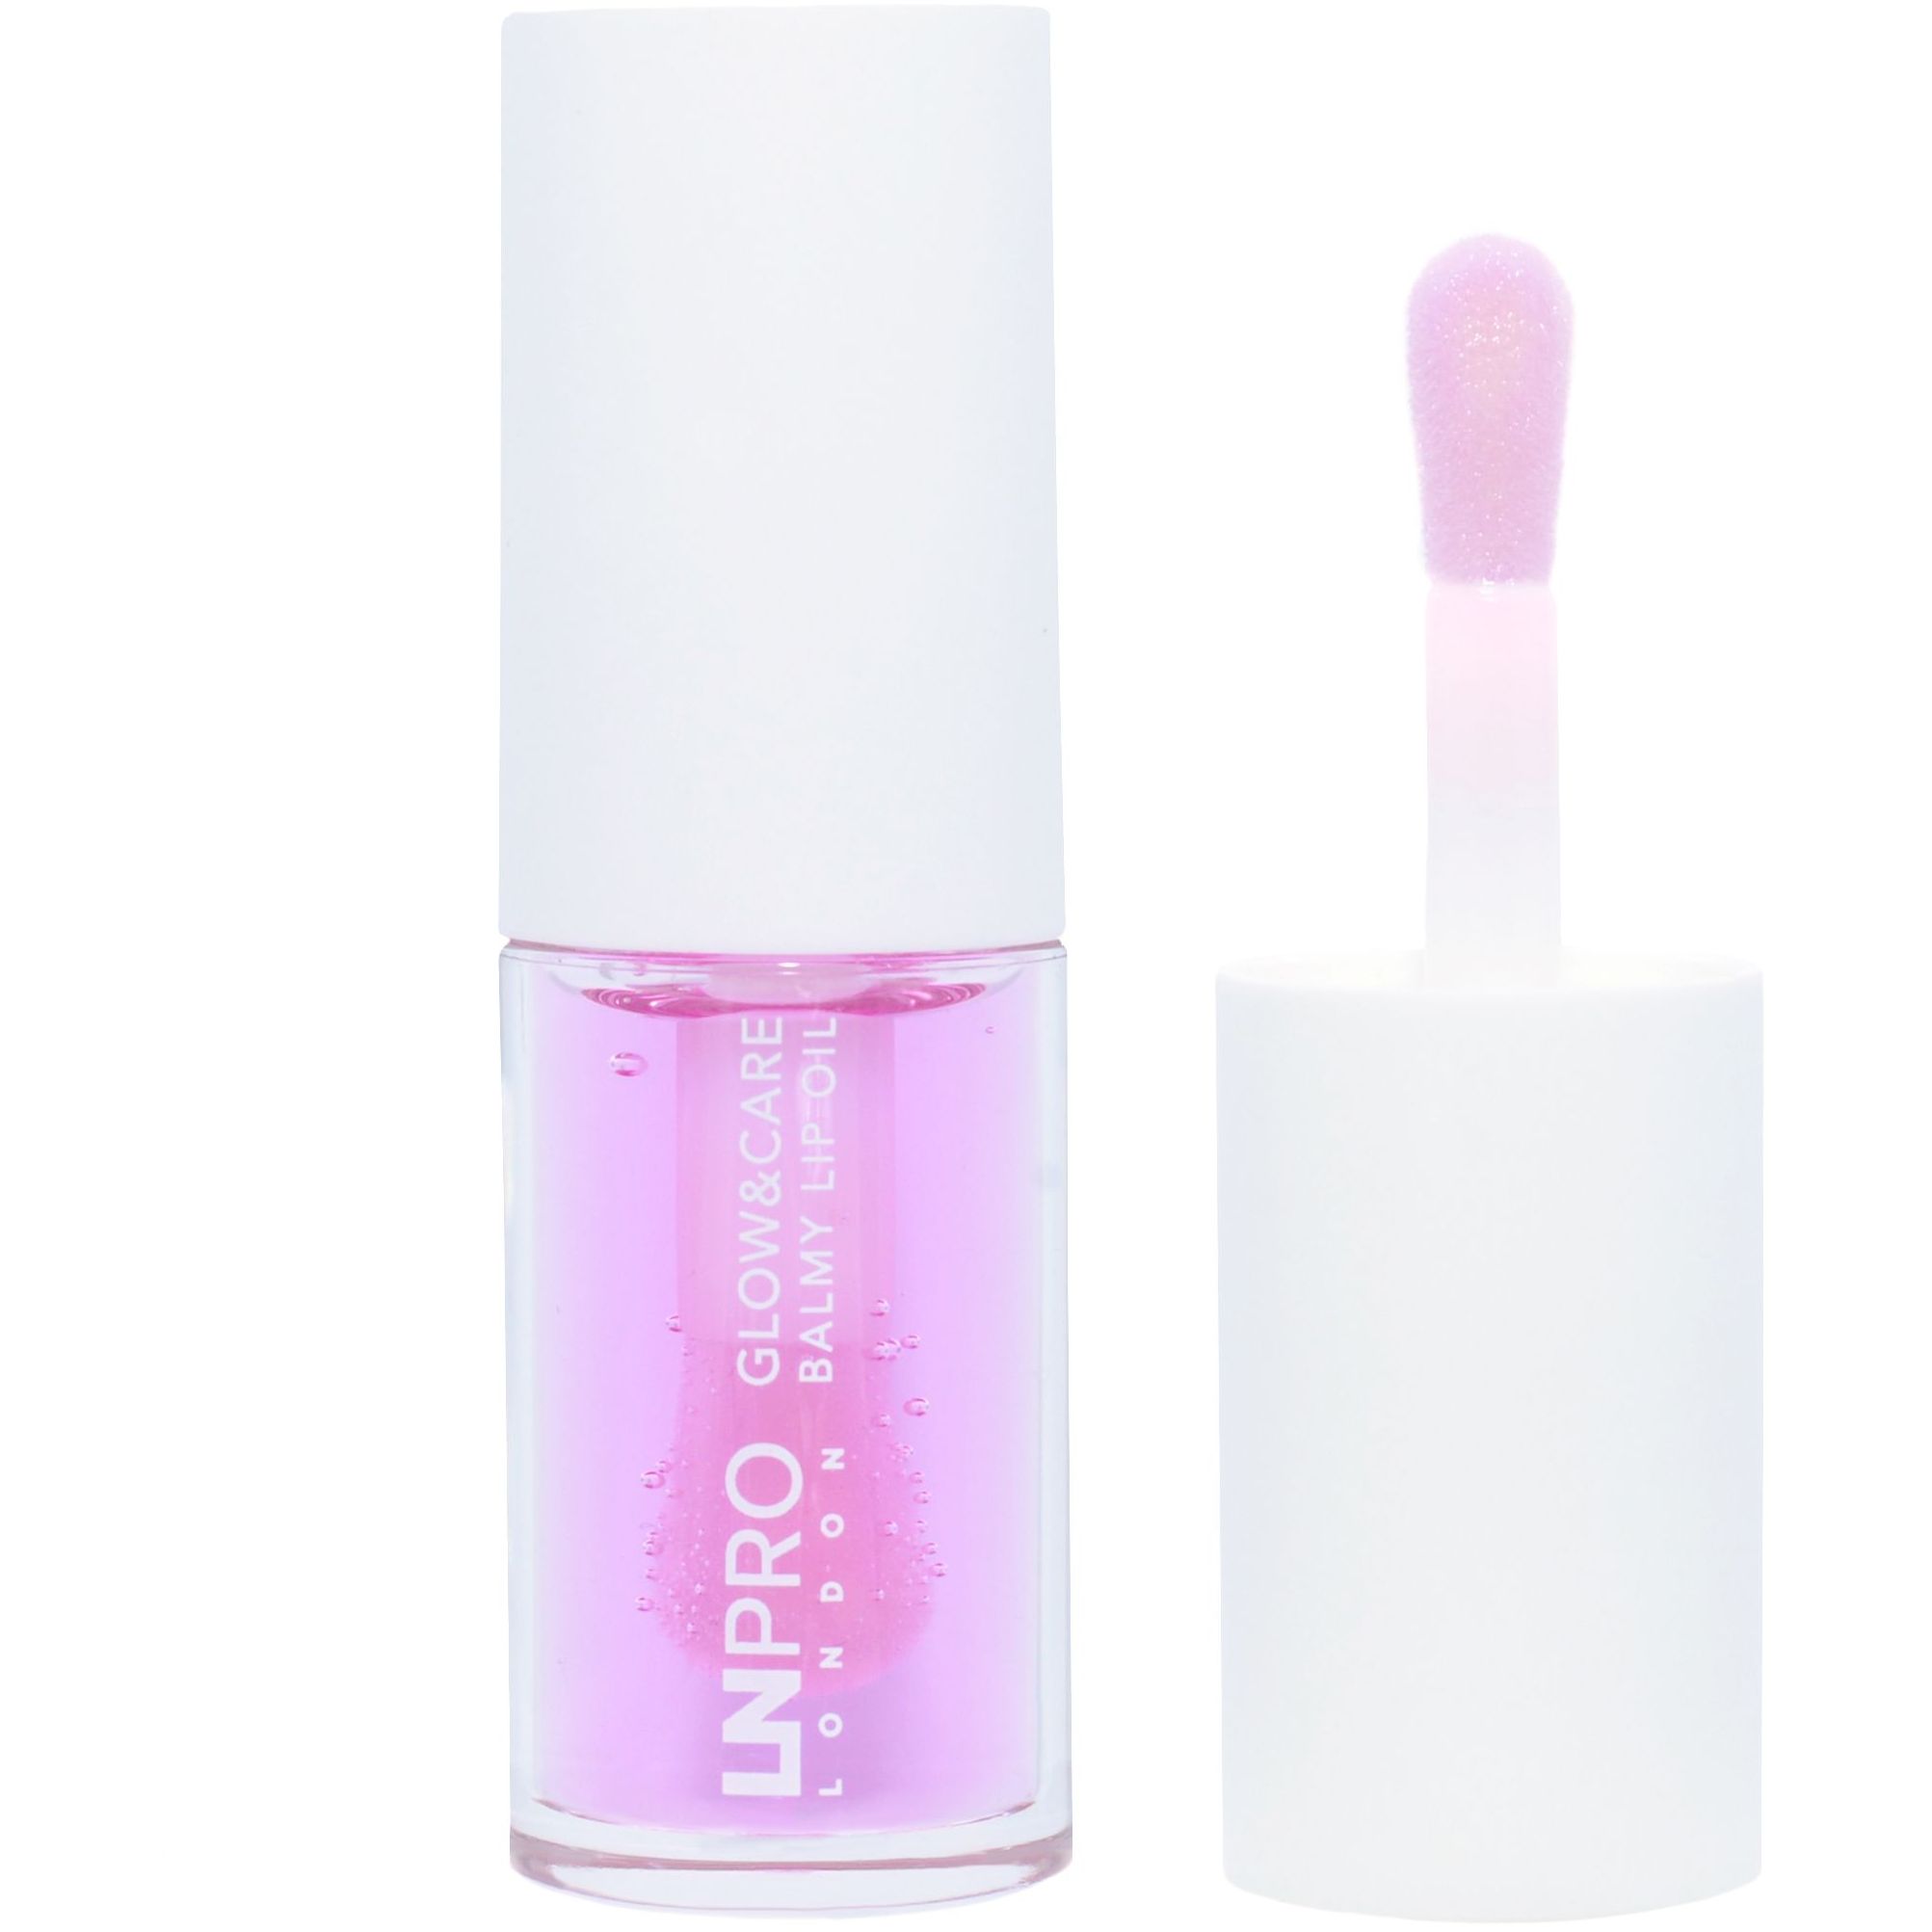 Масло-бальзам для губ LN Pro Glow & Care Balmy Lip Oil тон 104, 3.7 мл - фото 1